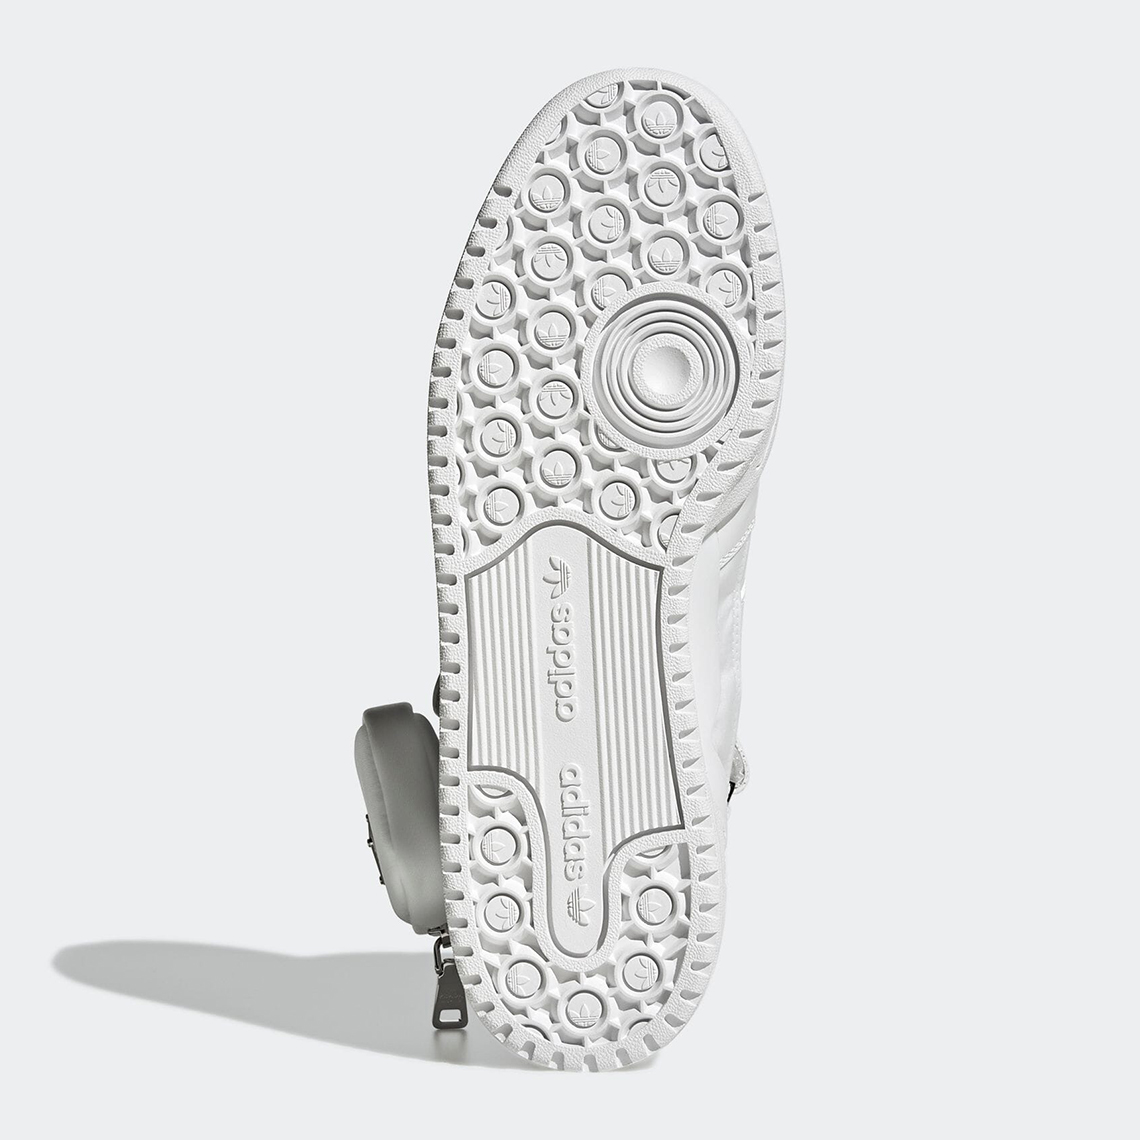 prada for adidas forum hi re nylon core white GY7041 8